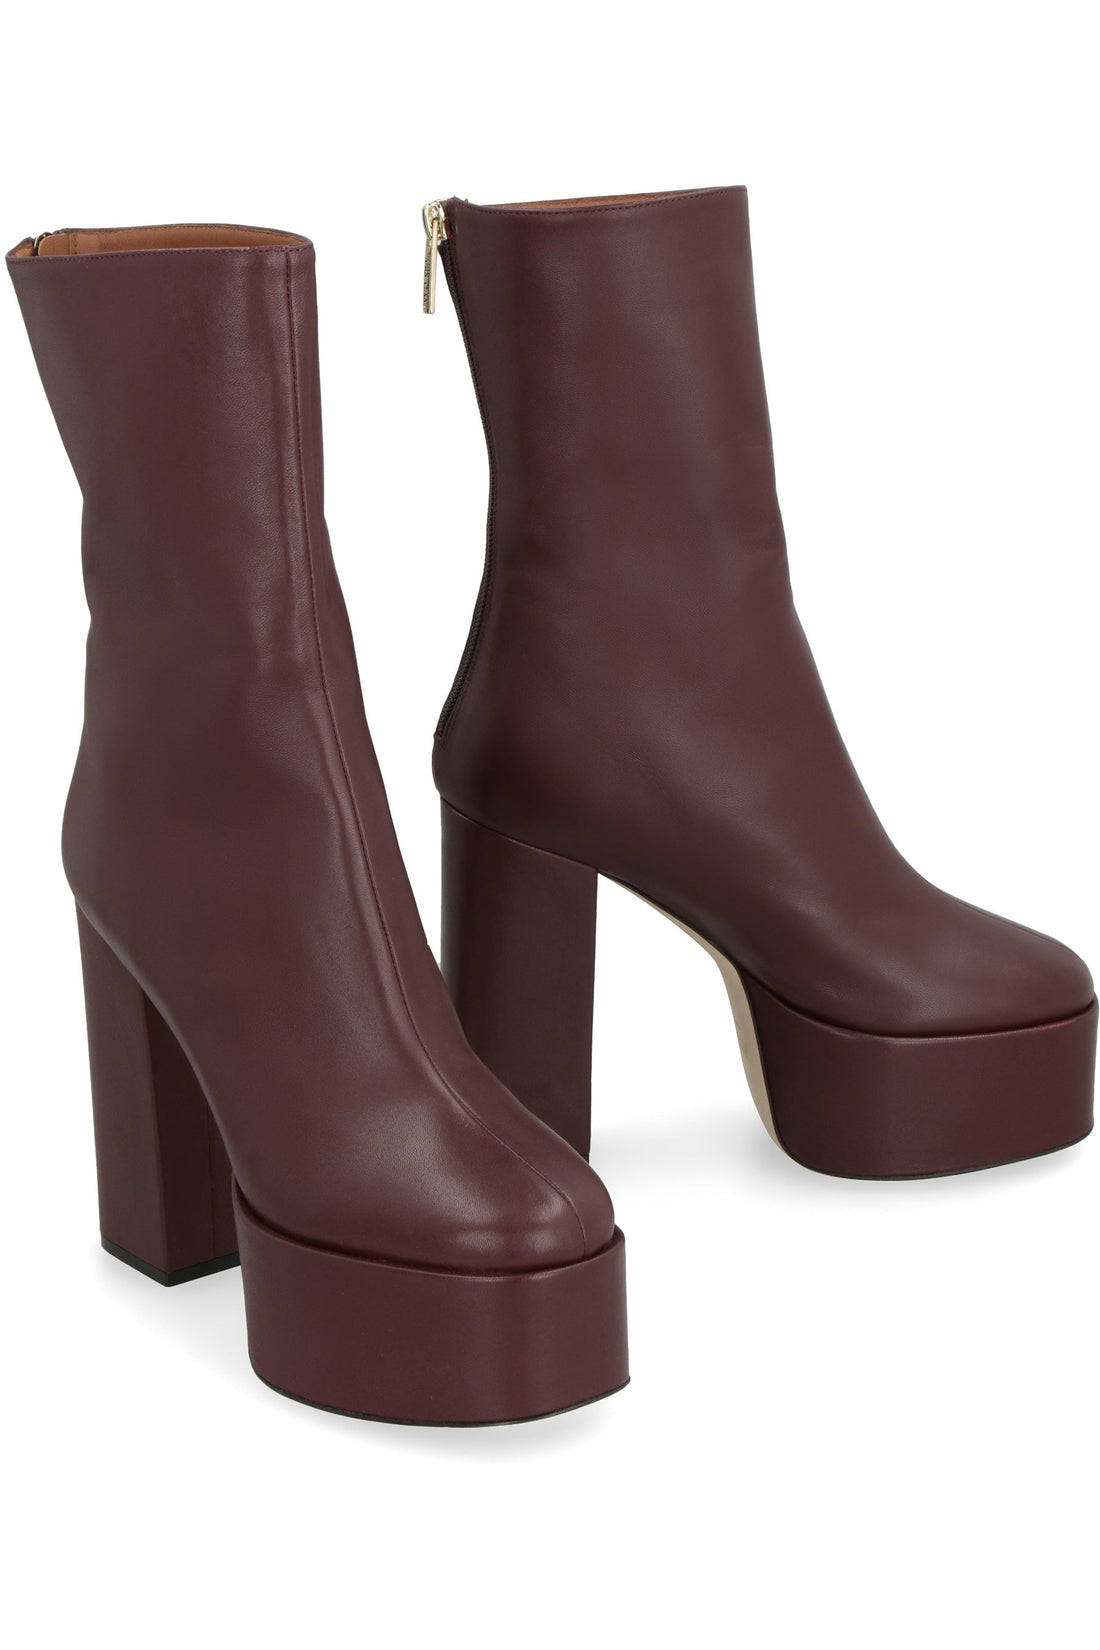 Paris Texas-OUTLET-SALE-Lexy leather ankle boots-ARCHIVIST